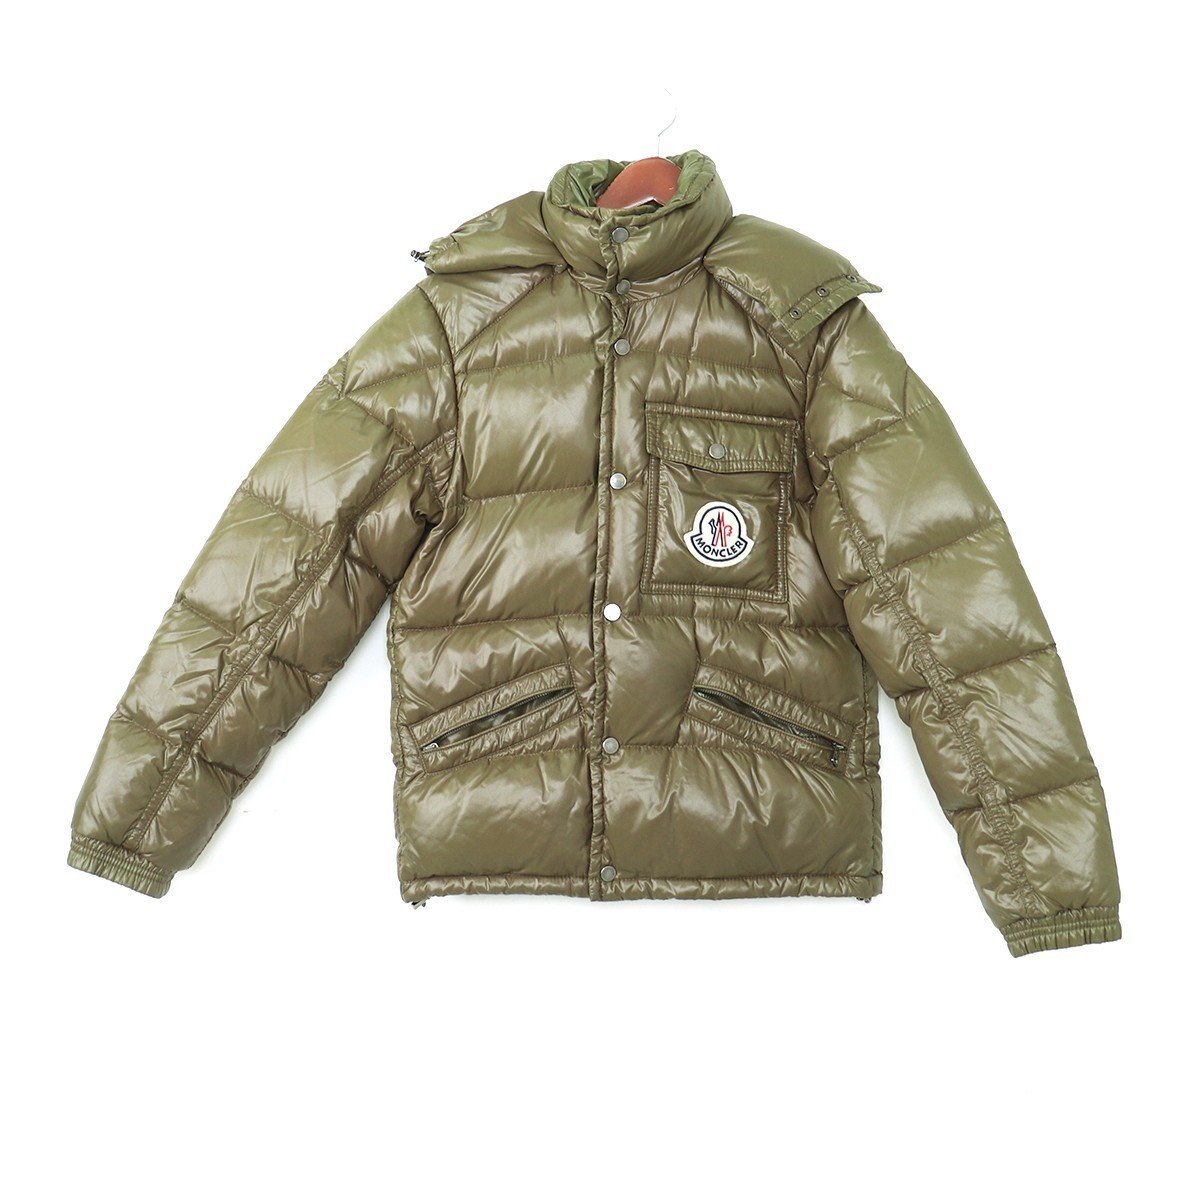 モンクレール MONCLER K2 ダウンジャケット ジャケット カーキ サイズ1 dawn jacket アウター 防寒 グレイグース